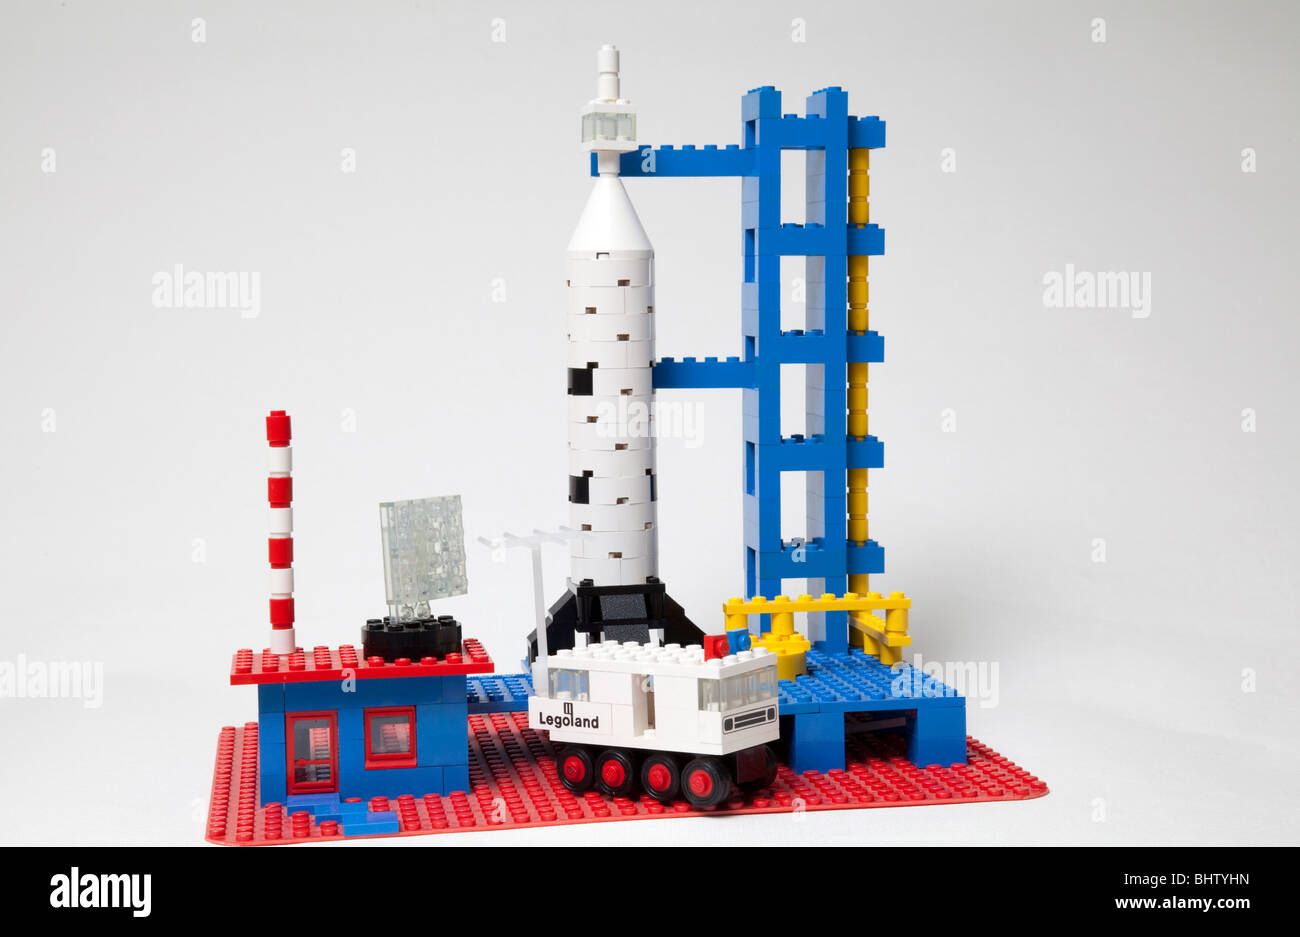 Alte Lego Spielzeug Set Rakete Produkteinführung Raumstation  Stockfotografie - Alamy